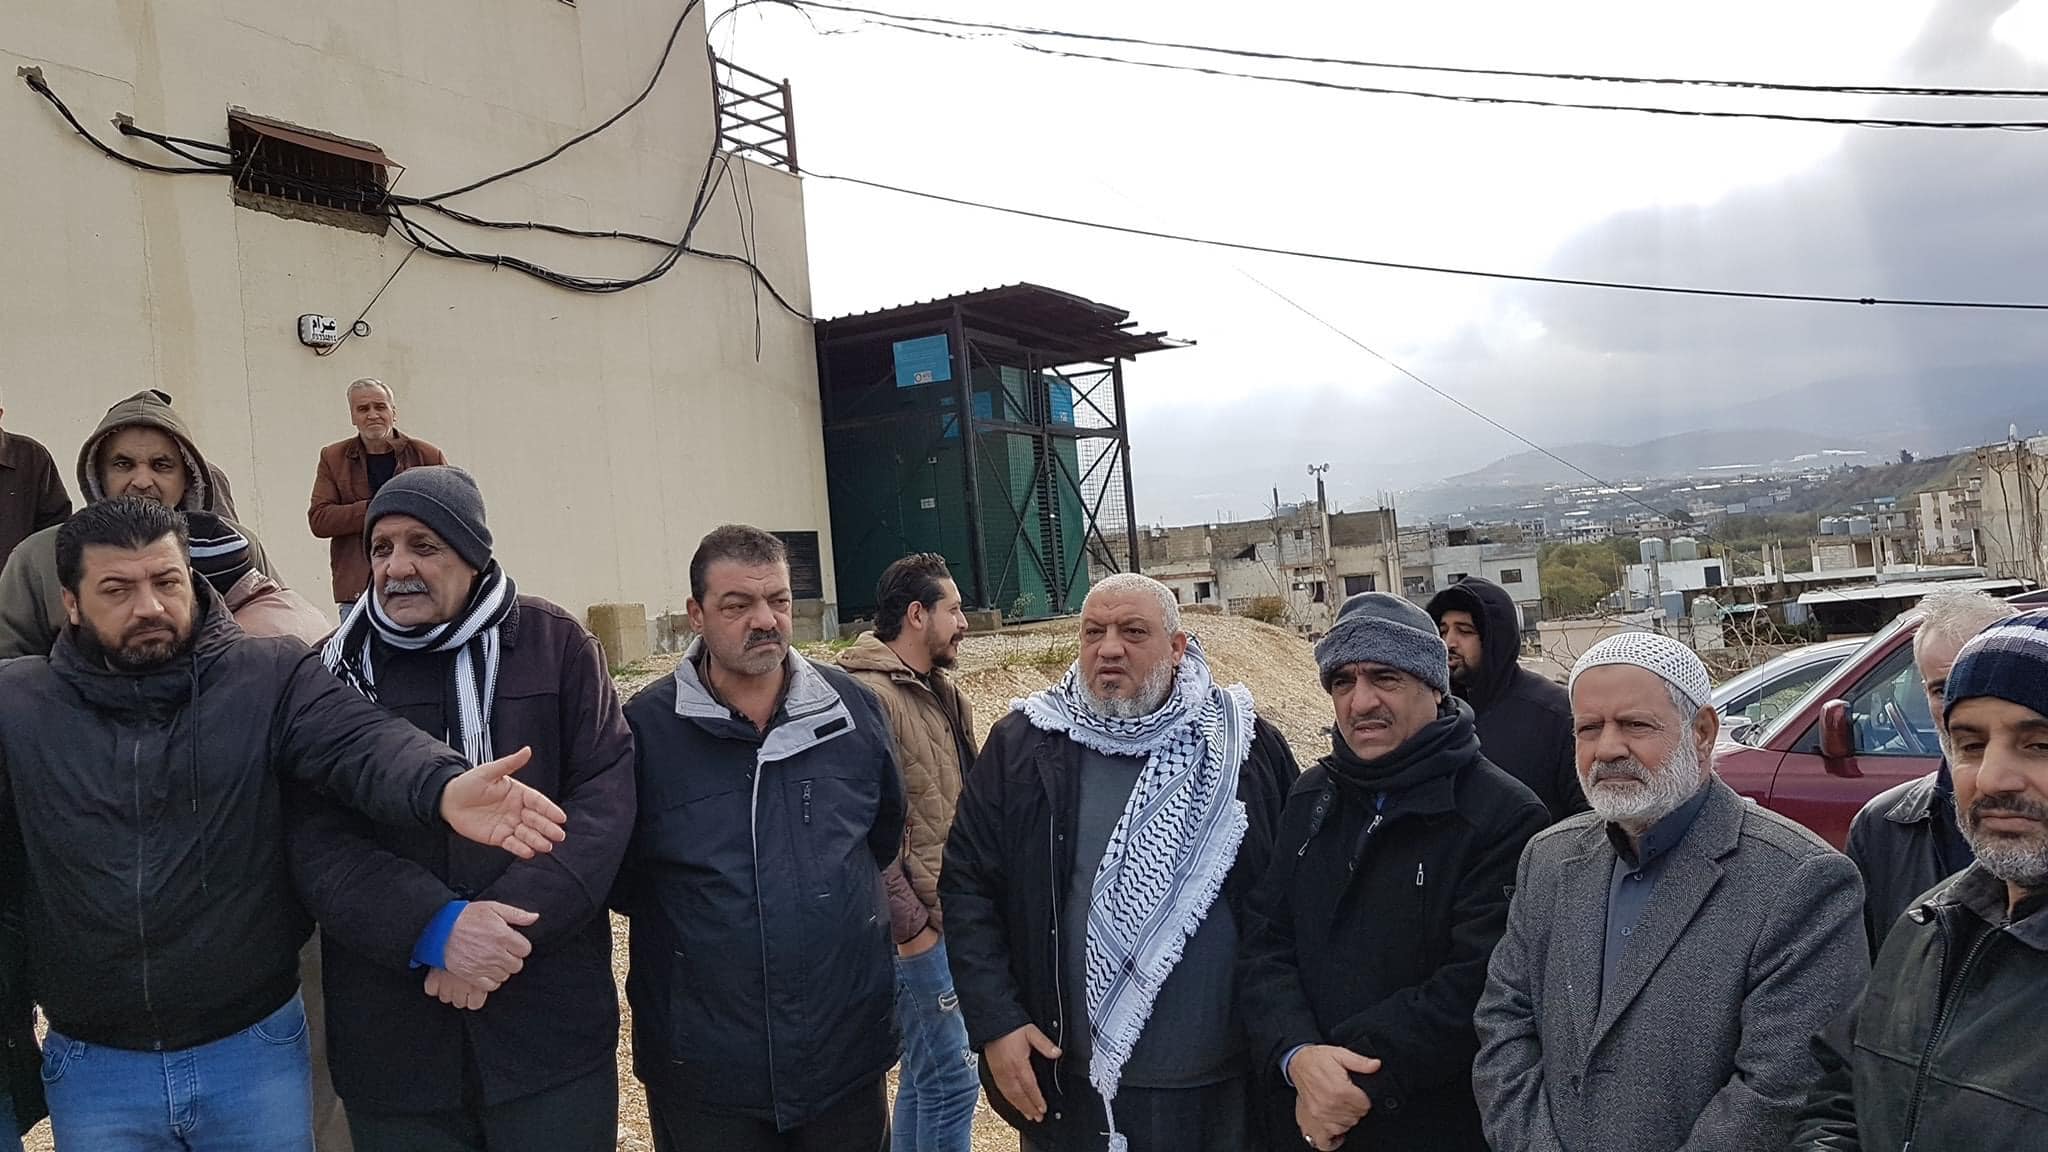 اعتصام للنازحين فلسطينيي - سوريا امام مكتب خدمات الانروا في مخيم نهر البارد